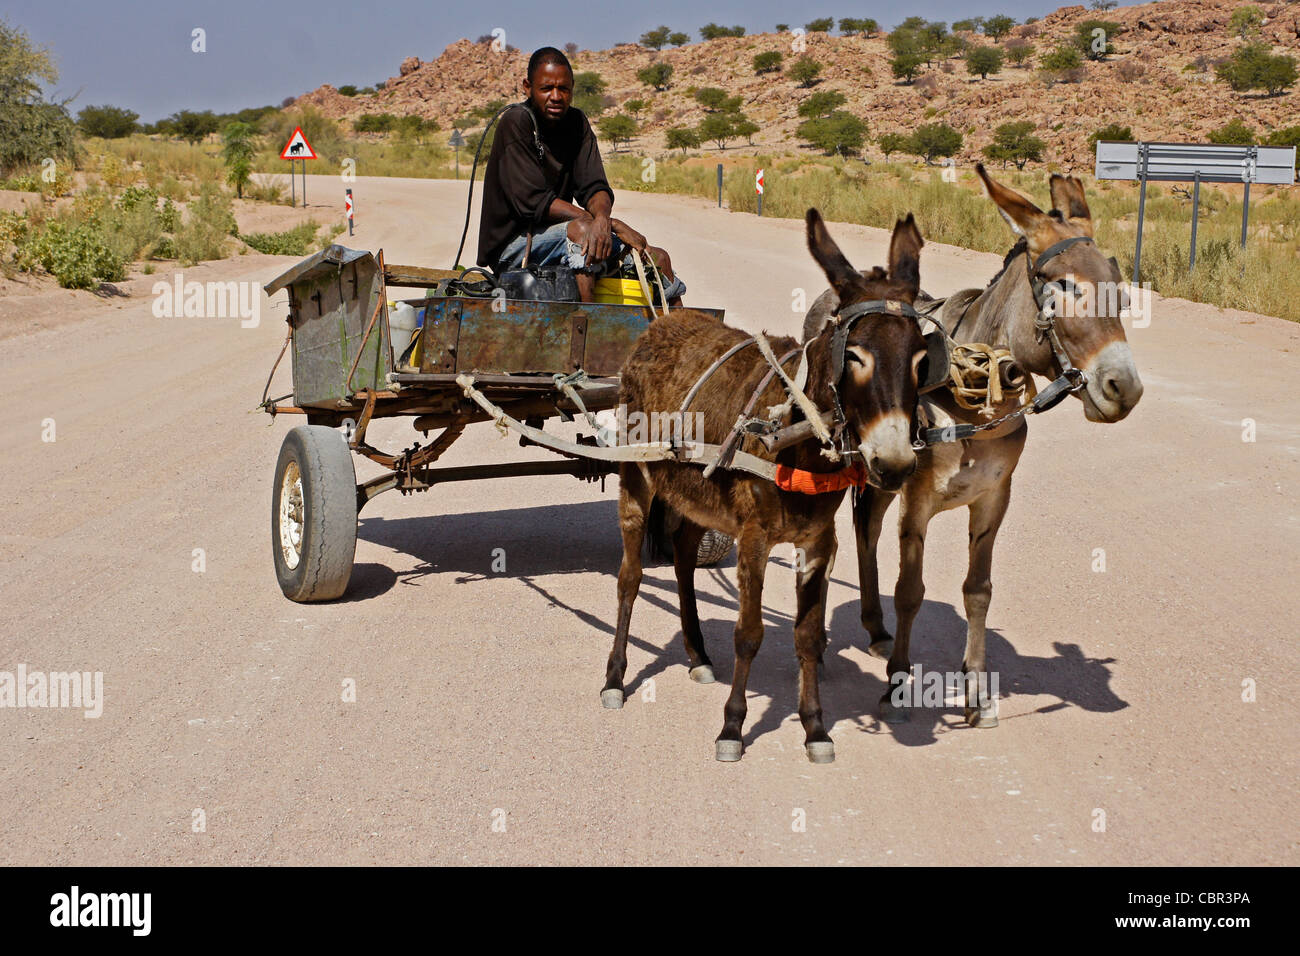 Herero man on donkey cart, Damaraland, Namibia Stock Photo